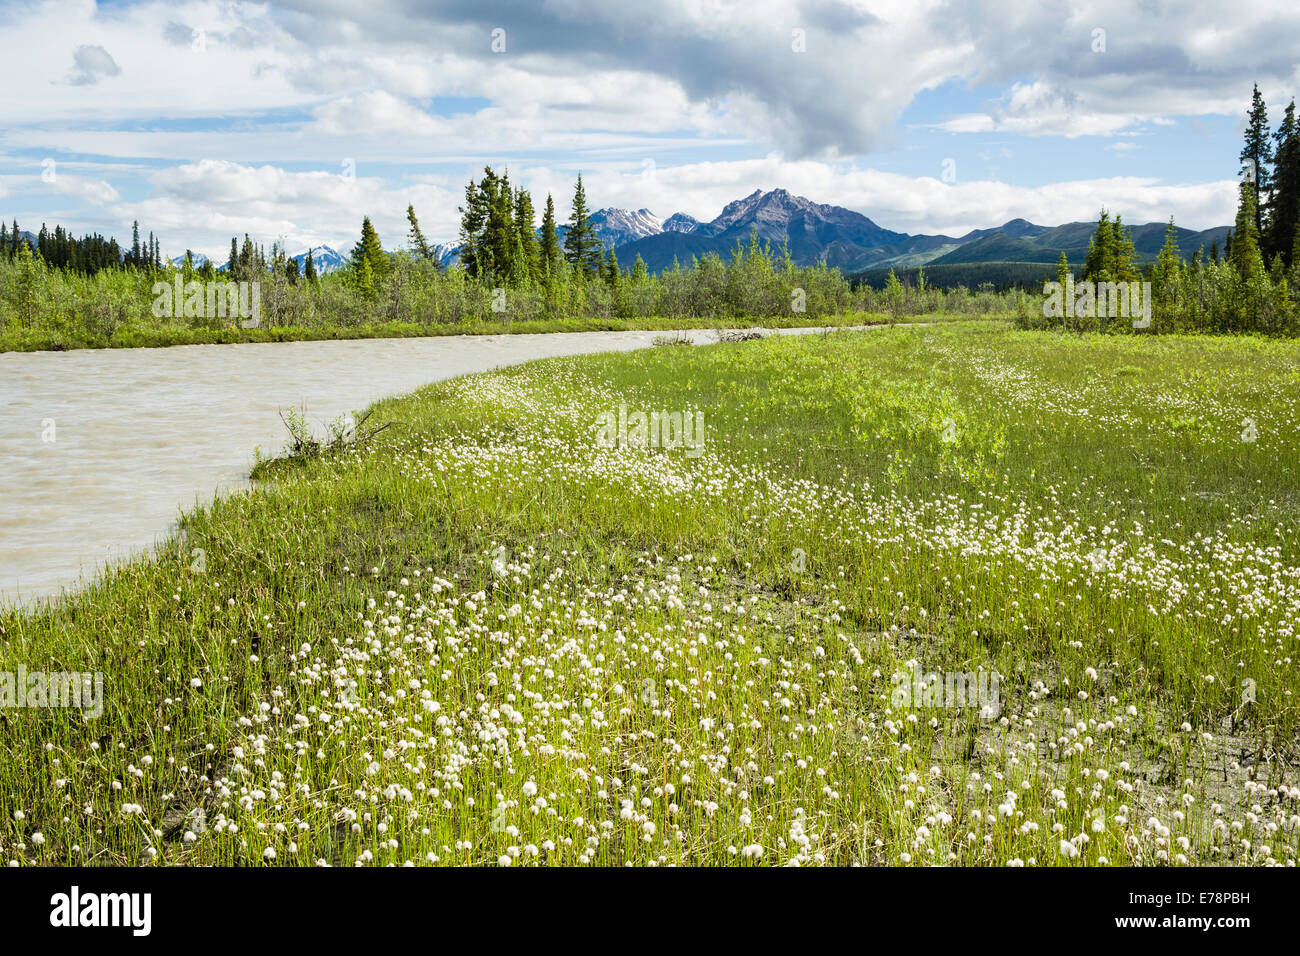 Tufted in cotone bianco di fiori di campo in erba linea le rive del fiume Santuario con l'Alaska Range nel Parco Nazionale di Denali in Alaska. Foto Stock